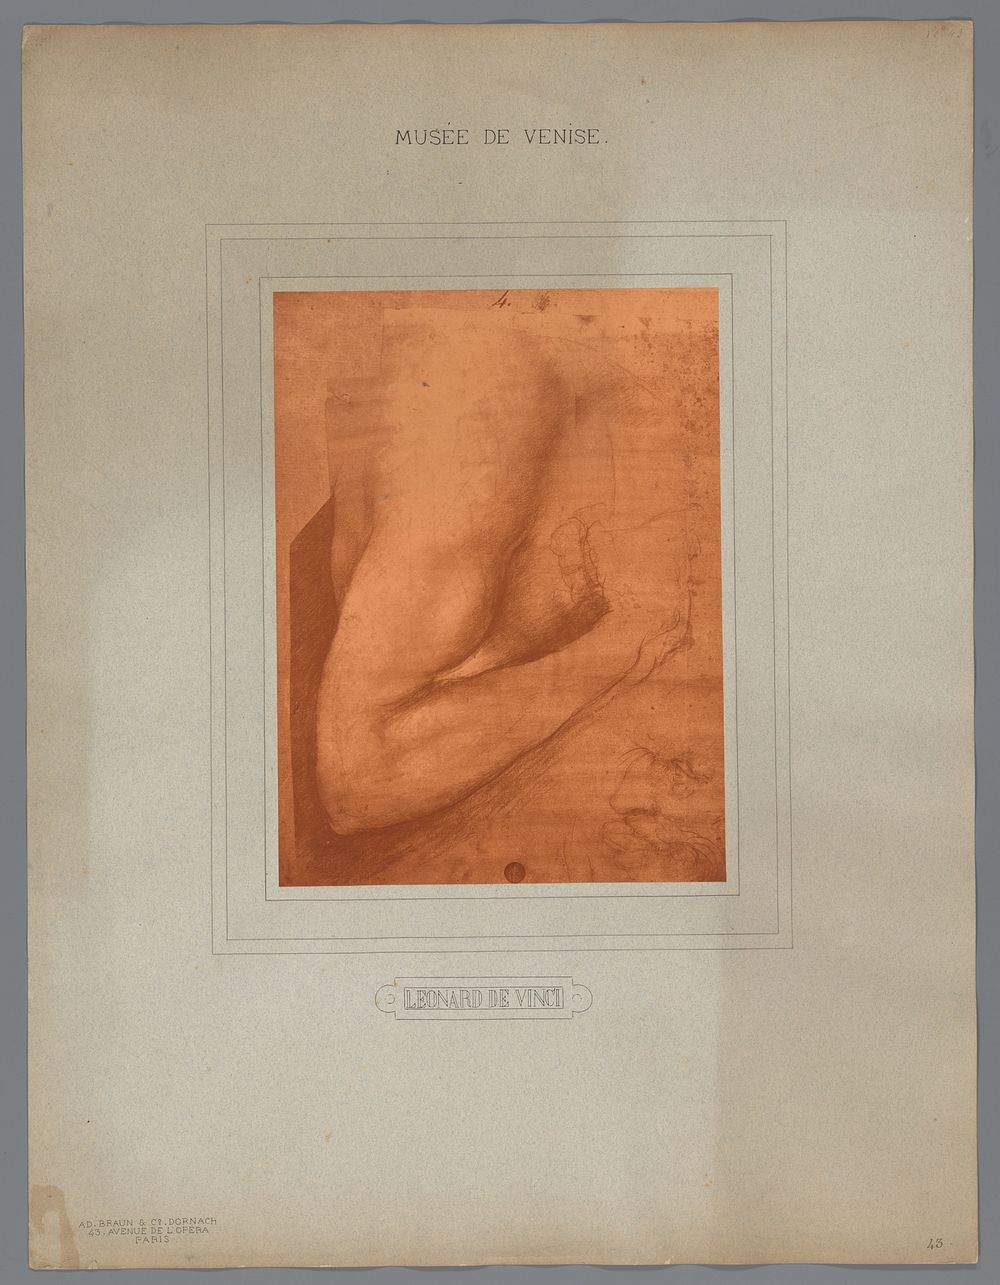 Fotoreproductie van een tekening van Leonardo da Vinci (studie van een arm) (1880 - 1900) by Adolphe Braun and Cie